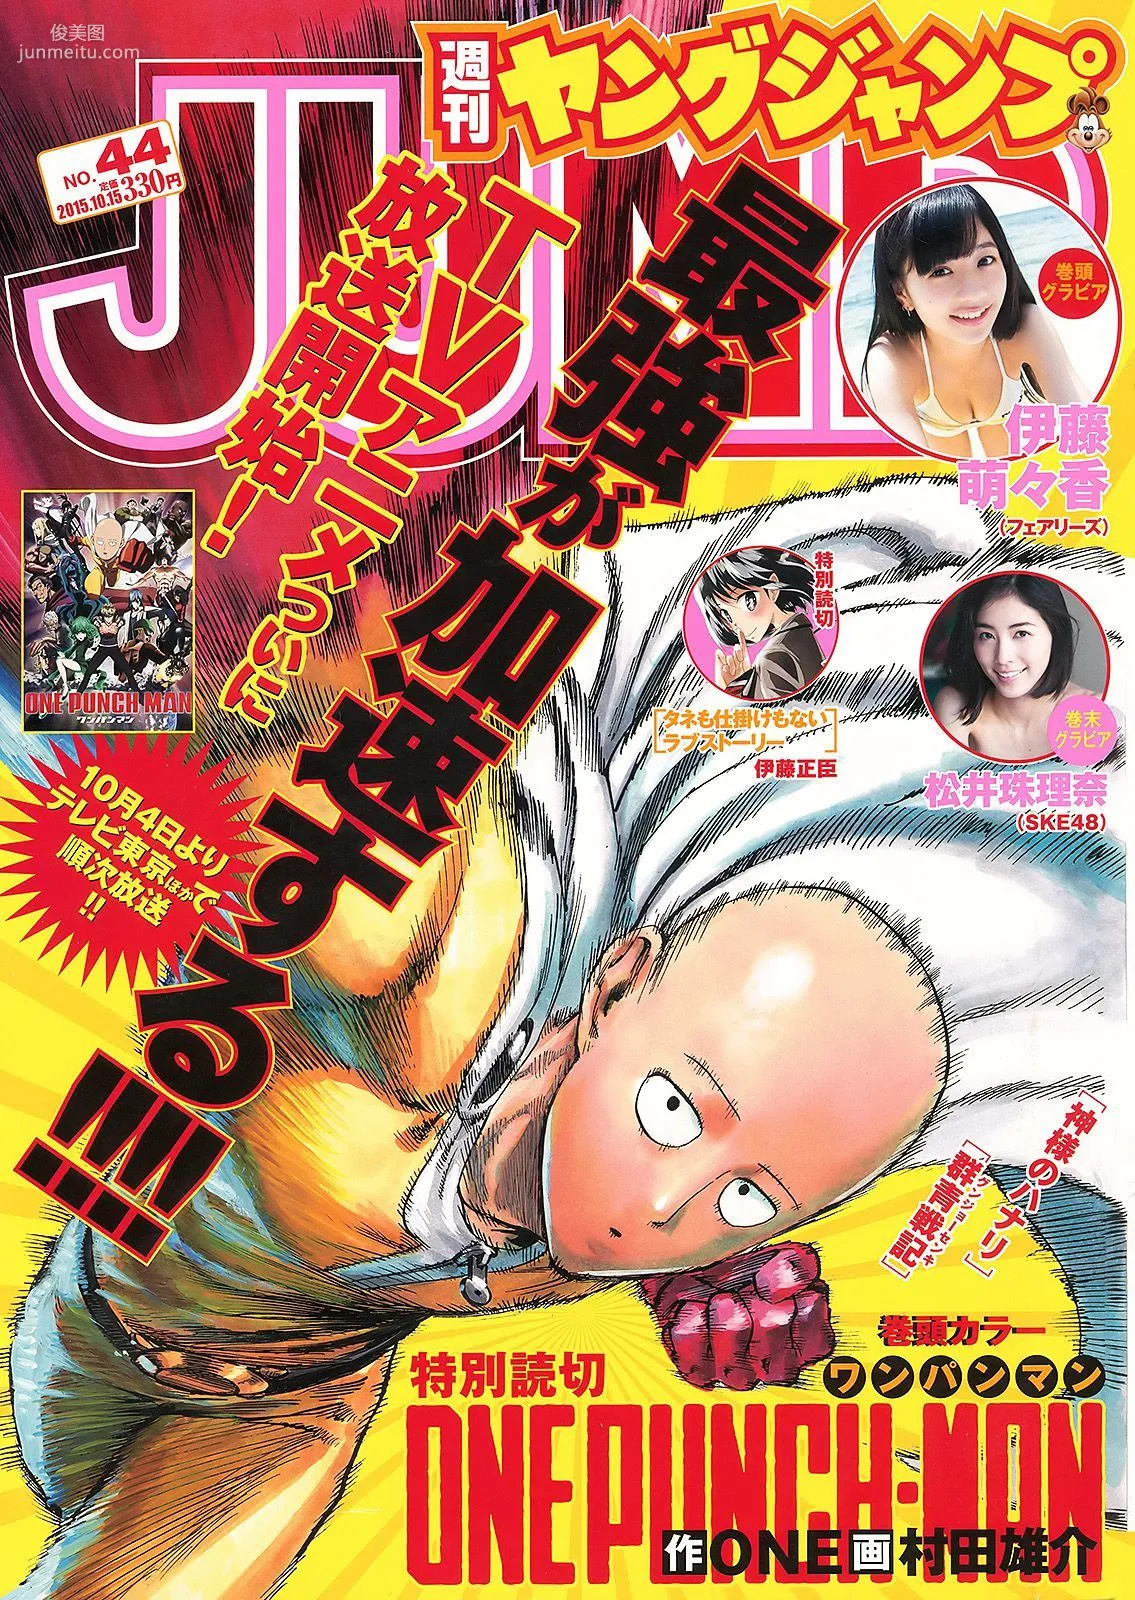 伊藤萌々香 松井珠理奈 [Weekly Young Jump] 2015年No.44 写真杂志1